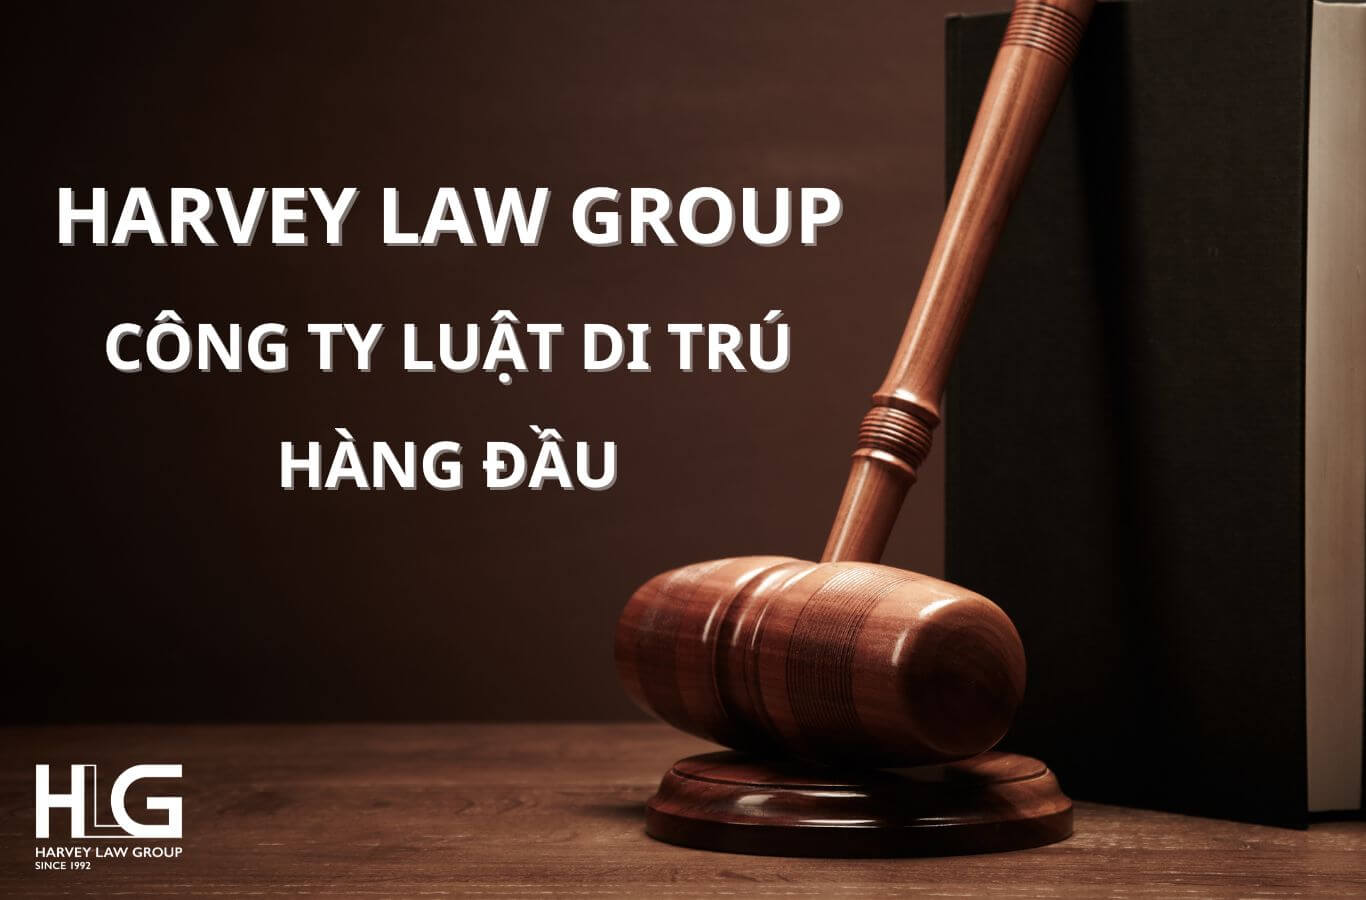 Harvey Law Group là Công ty luật di trú tư vấn định cư được tin tưởng hàng đầu Việt Nam